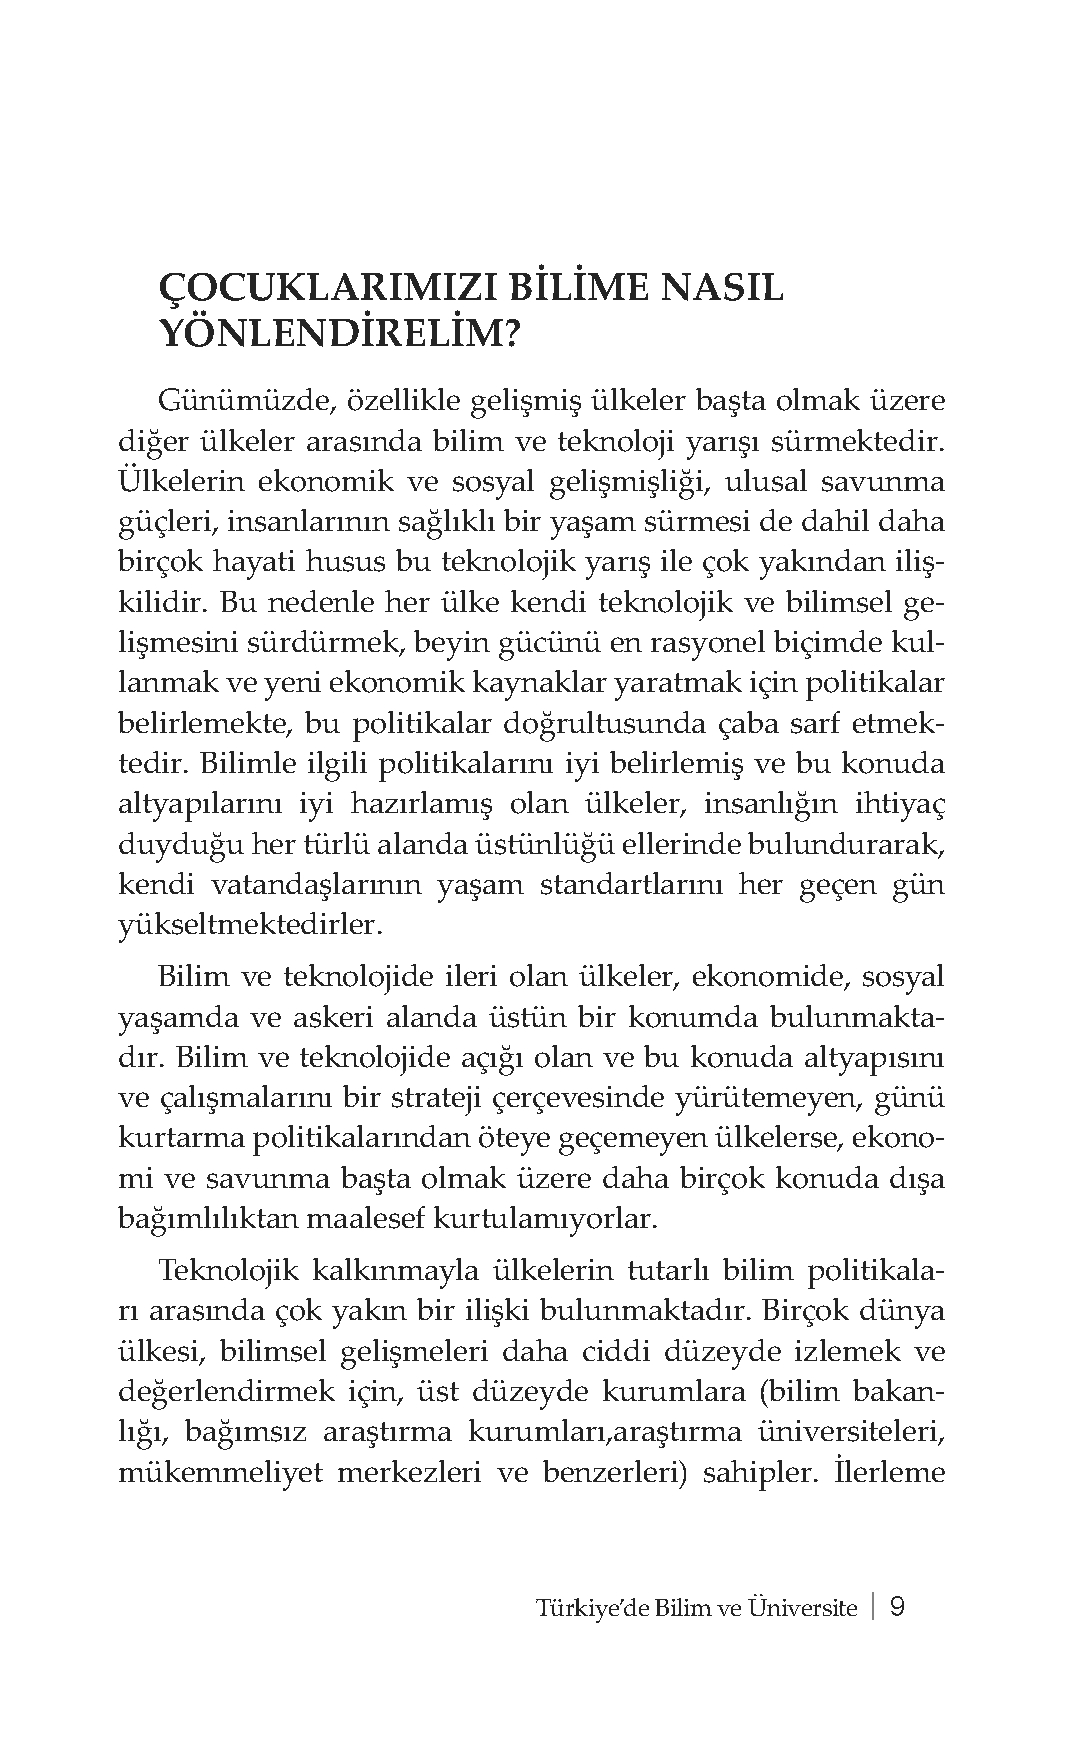 Türkiyede Bilim ve Üniversite - Prof. Dr. Cemil Çelik